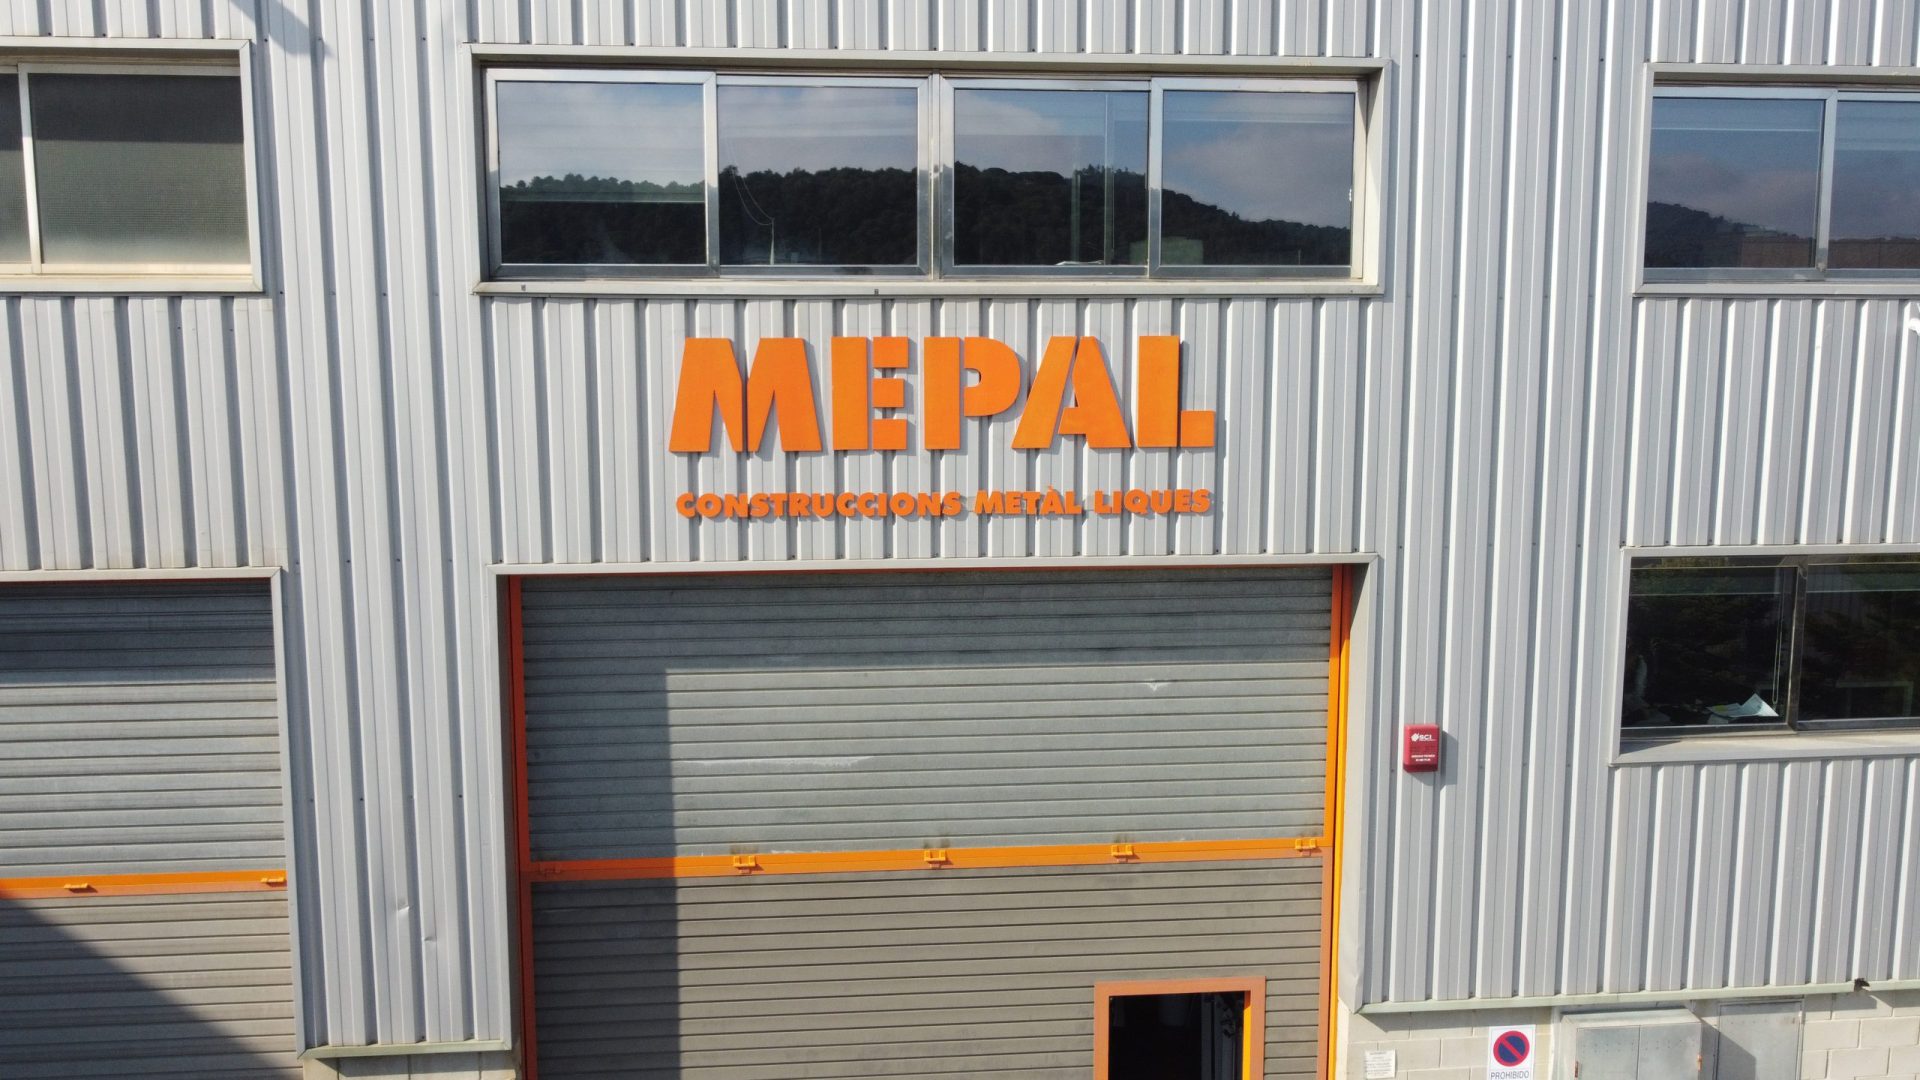 Mepal es un grupo de empresas especializadas en el sector metalúrgico. Como expertos en la construcción de metal, entendemos la importancia de ofrecer propuestas de alta calidad y personalizadas para nuestros clientes.